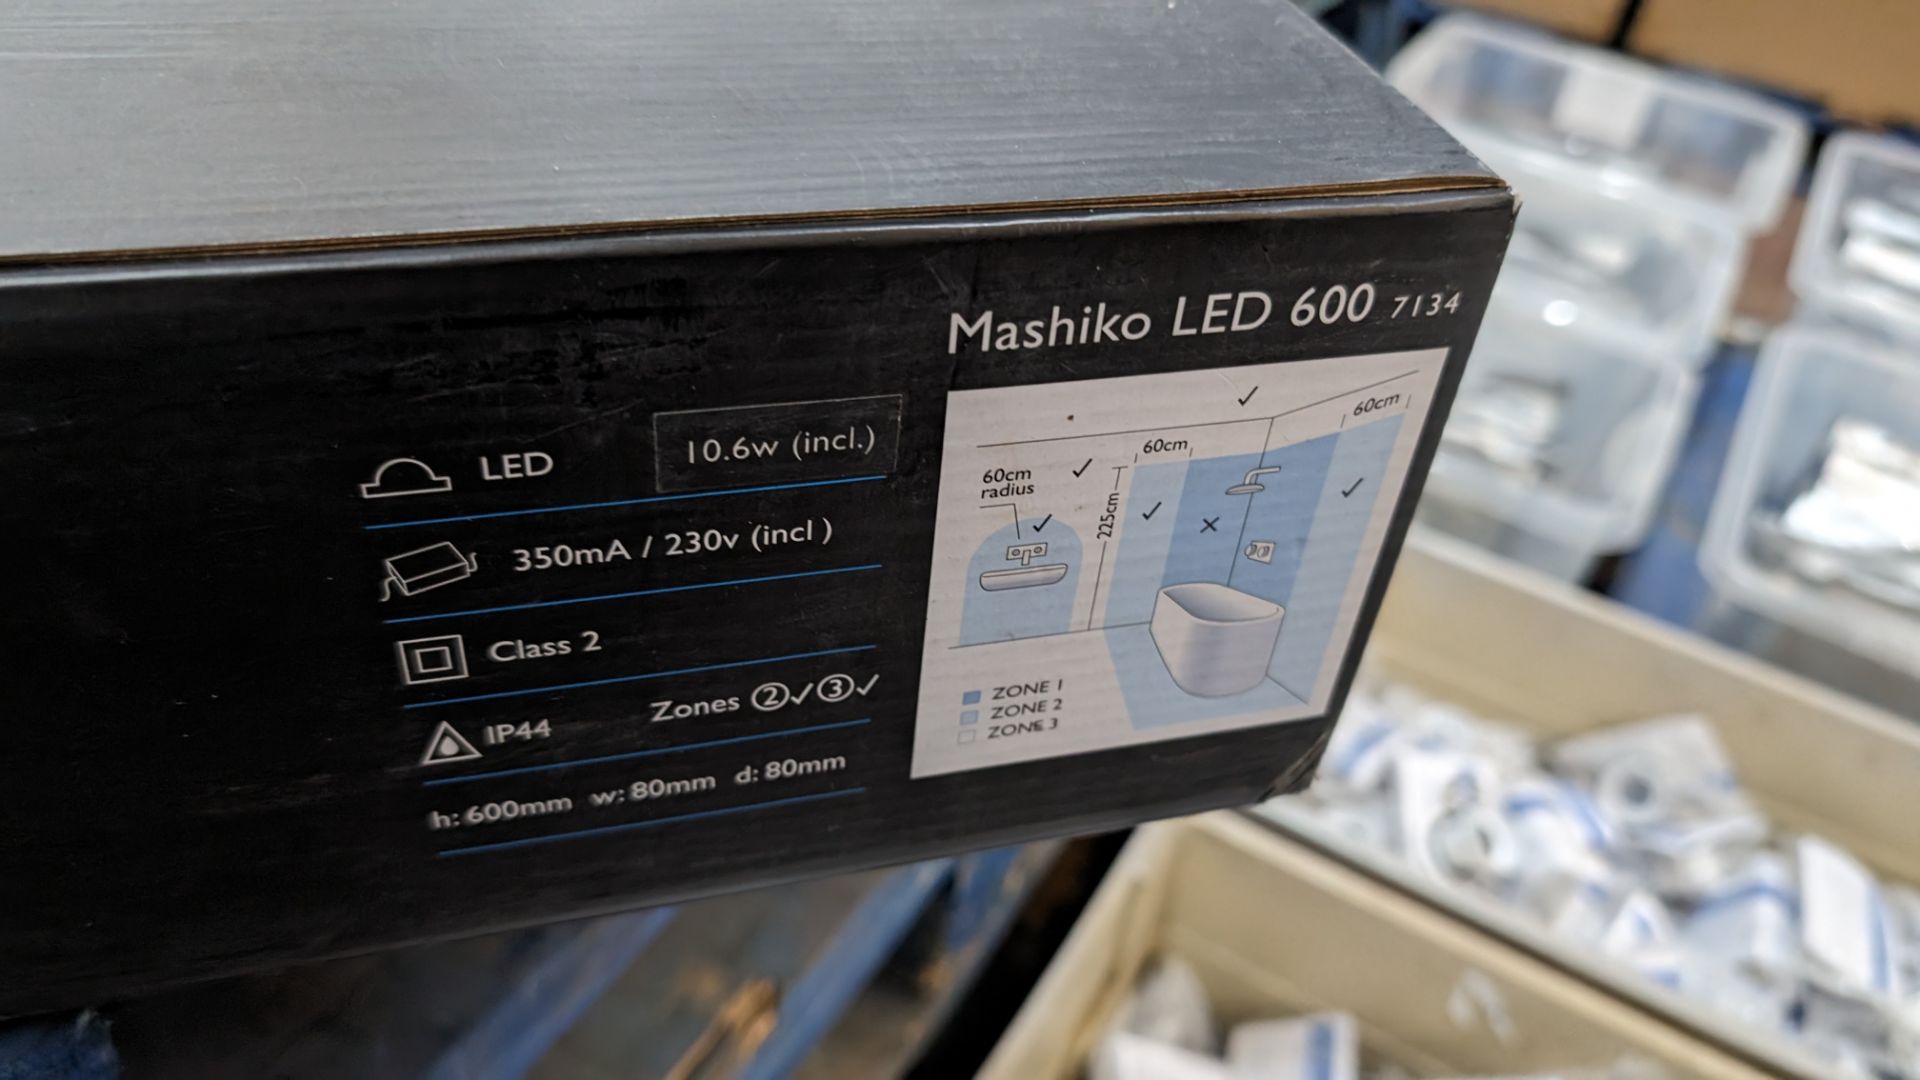 Astro Mashiko LED 600 lamp - Image 4 of 5